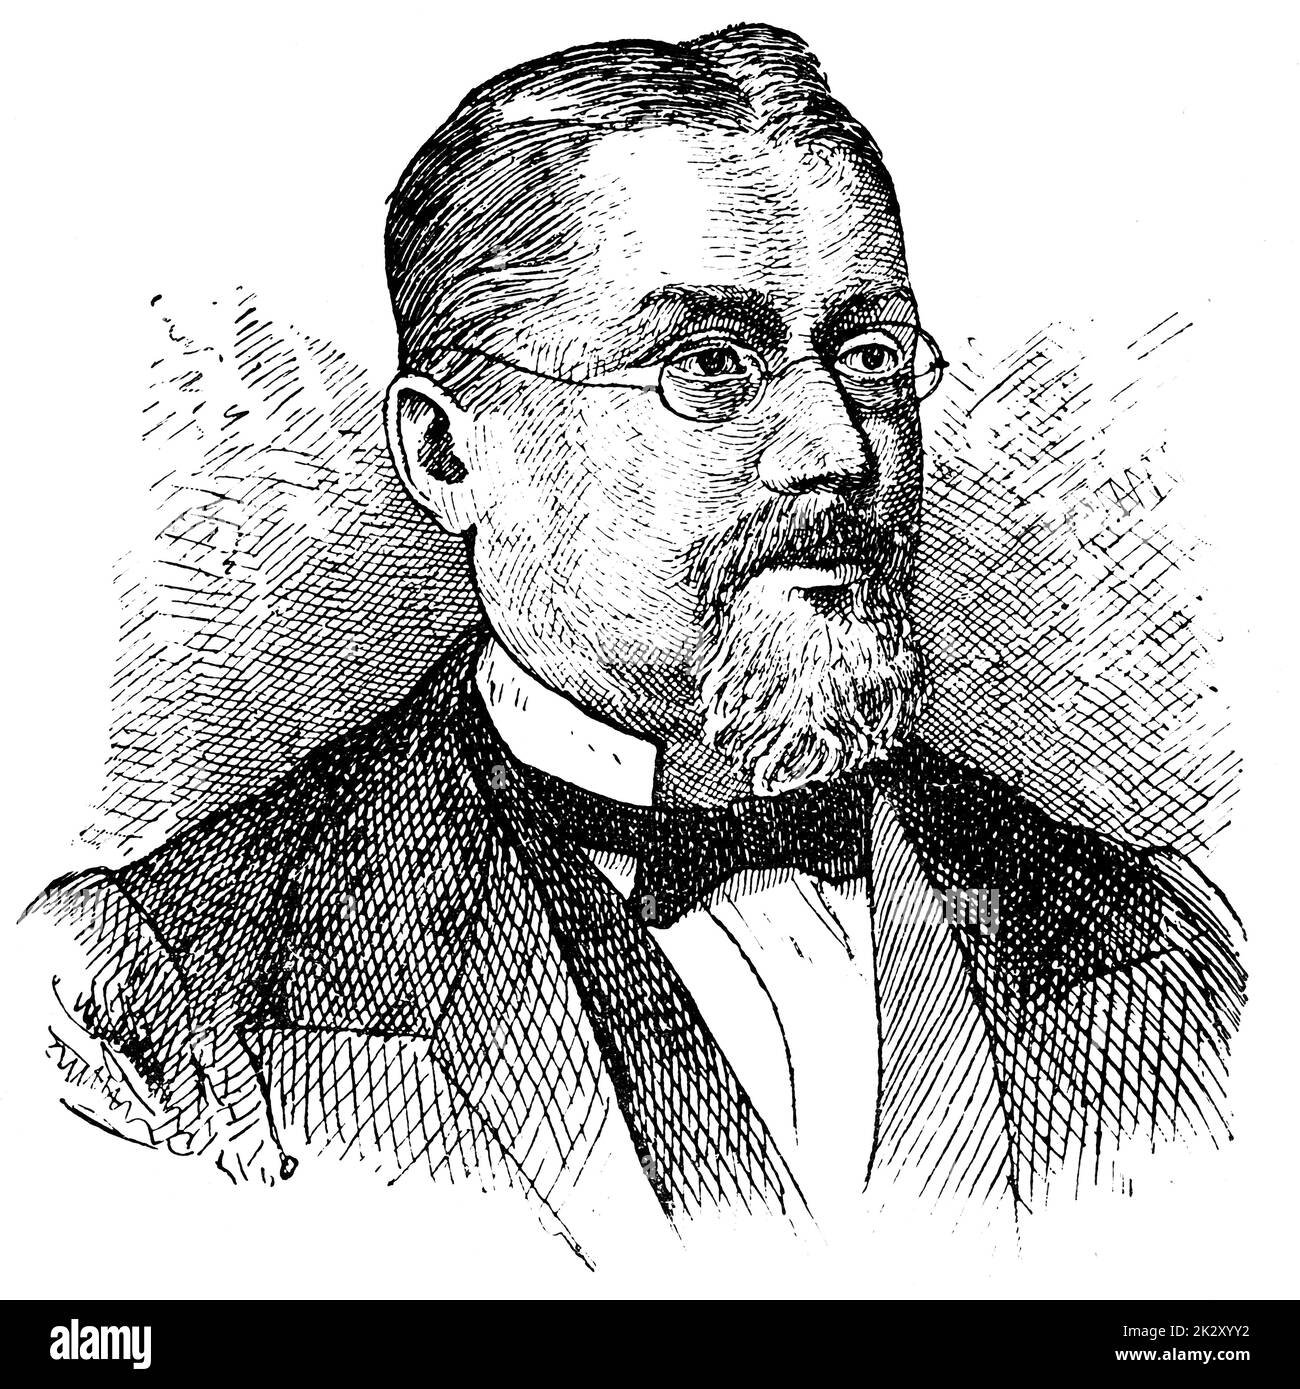 Porträt von Joseph Victor von Scheffel - ein deutscher Dichter und Schriftsteller. Illustration des 19. Jahrhunderts. Weißer Hintergrund. Stockfoto